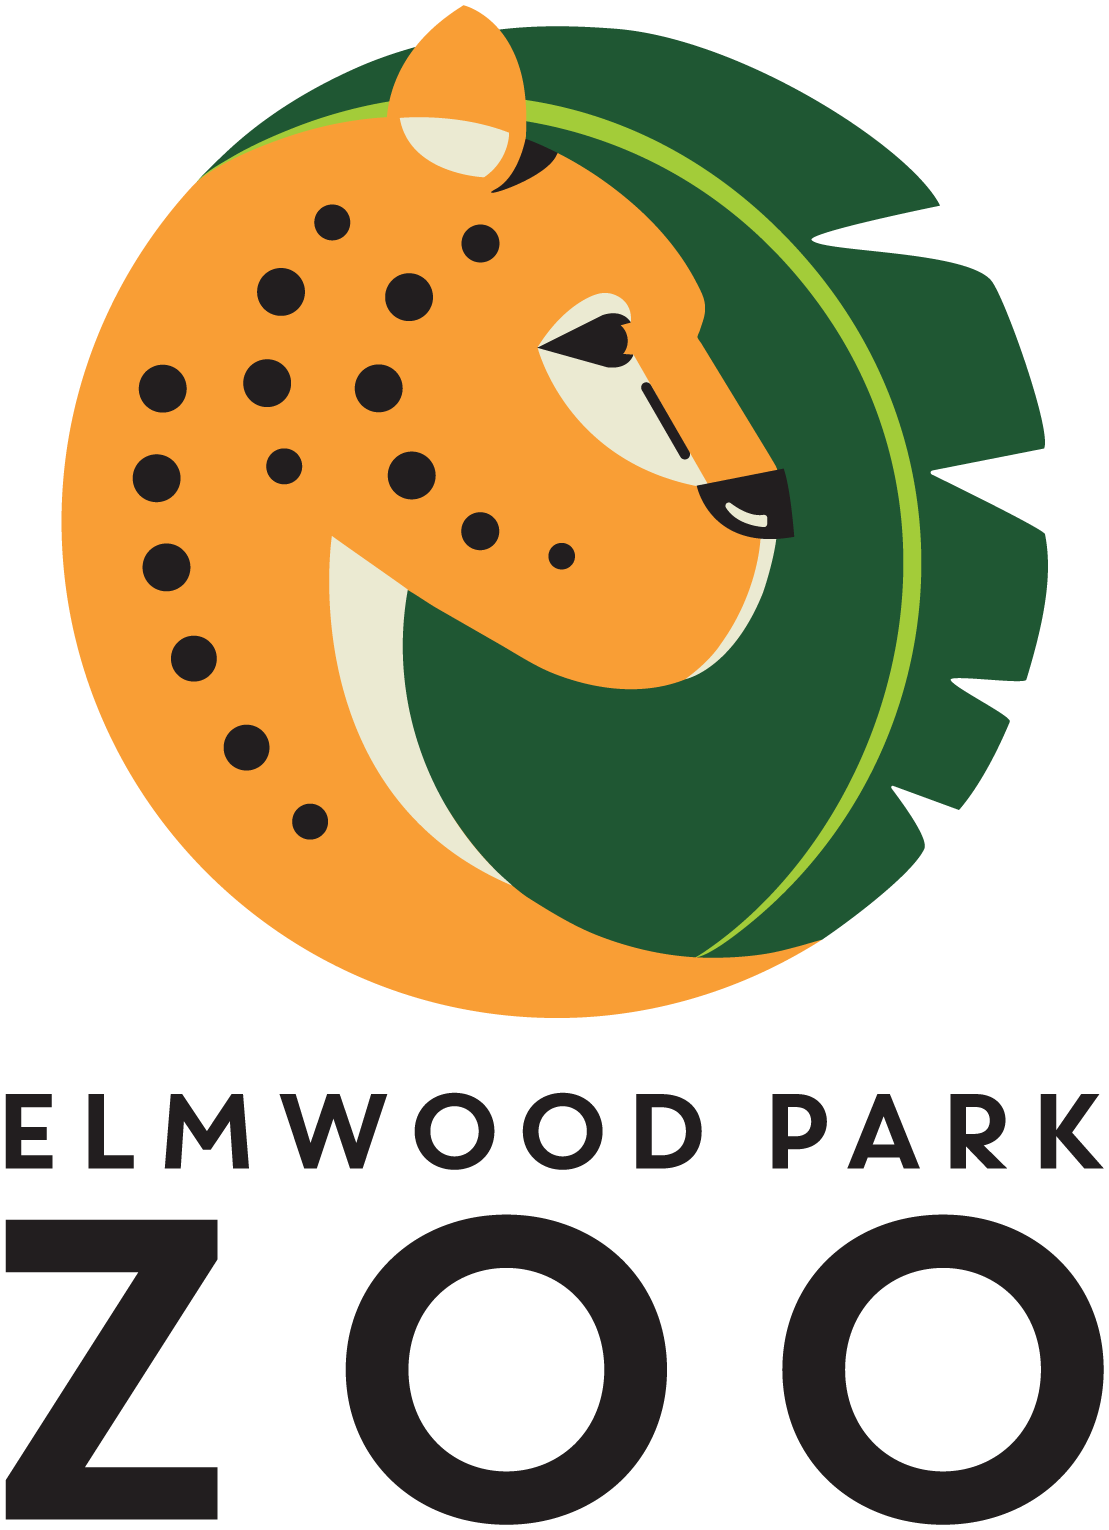 elmwood park zoo logo